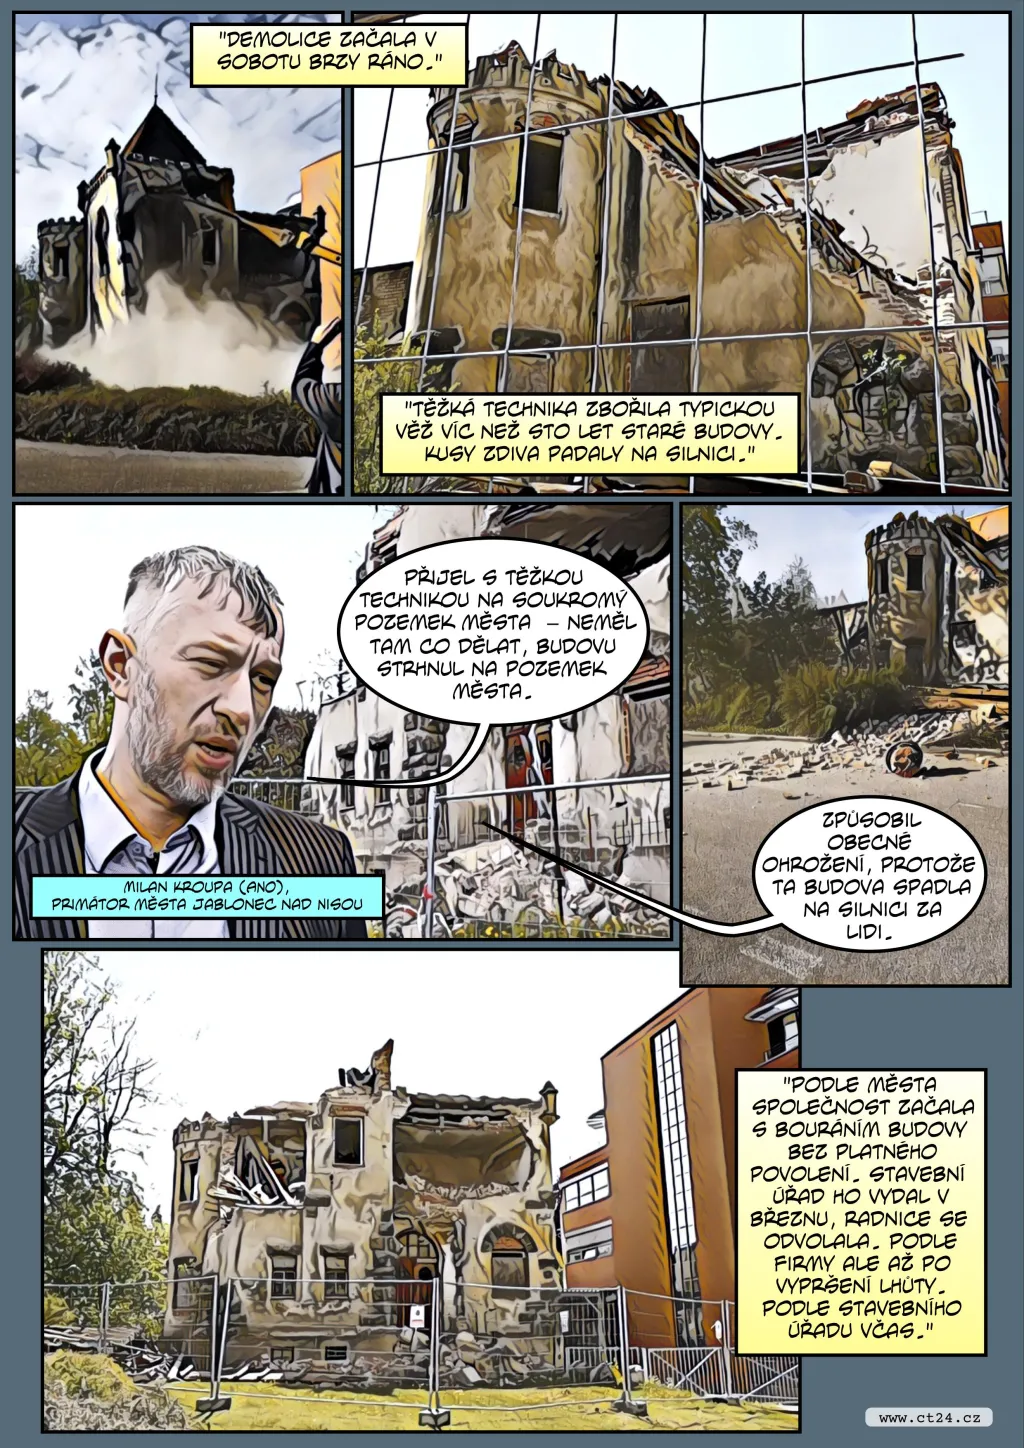 Komiks: Demolice zámečku Schlaraffia